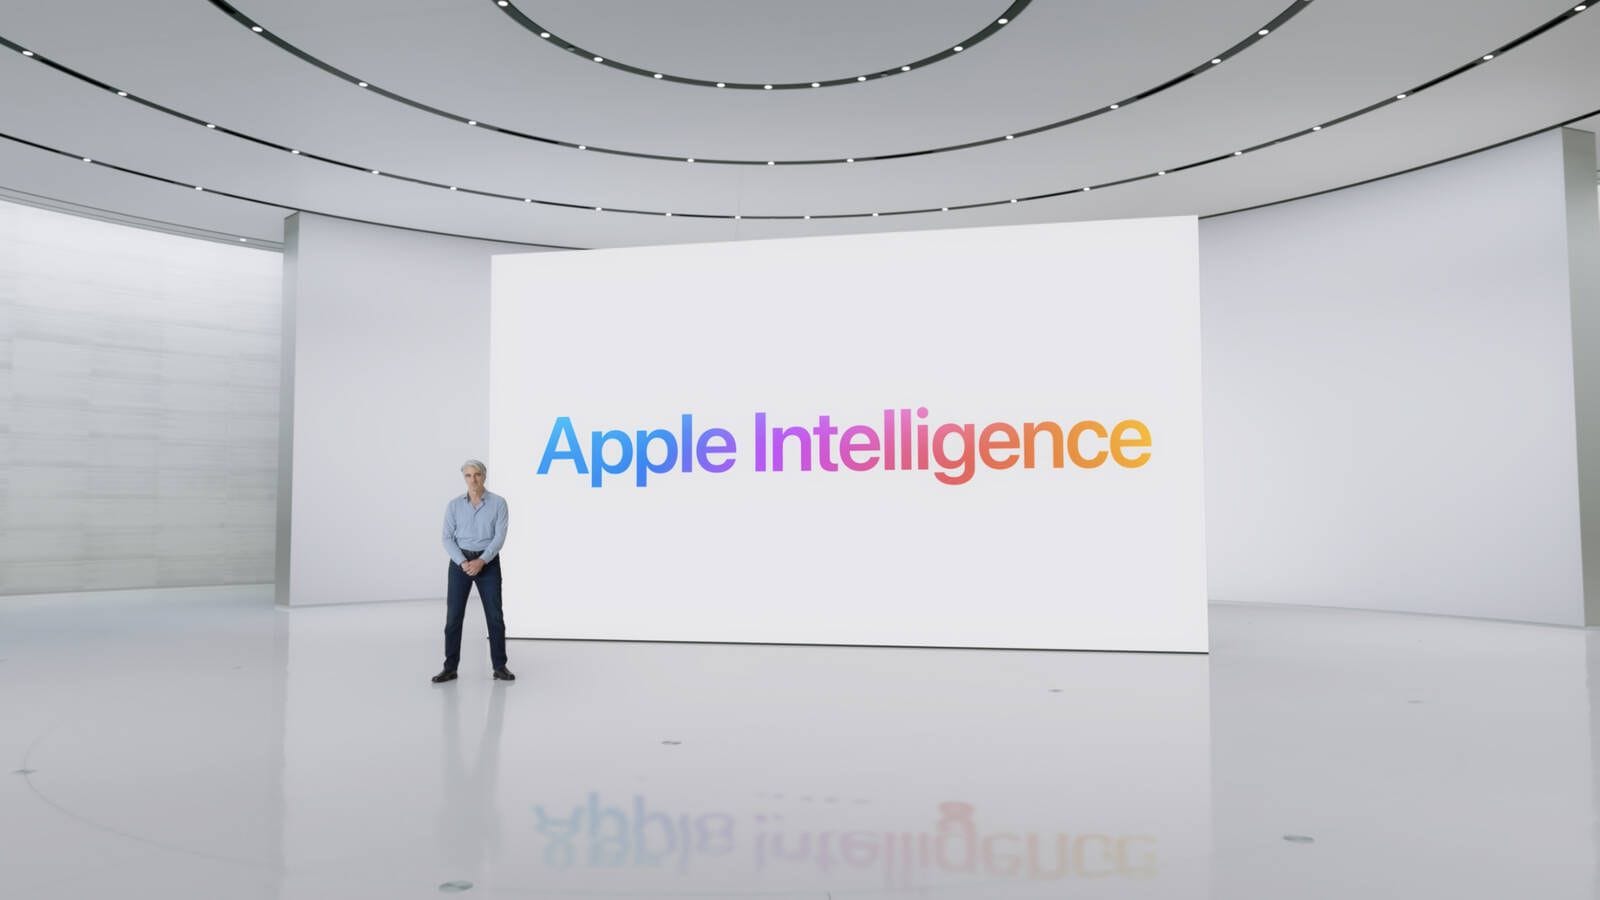 Apple (безуспешно) ищет ИИ-партнёра для Apple Intelligence в Китае